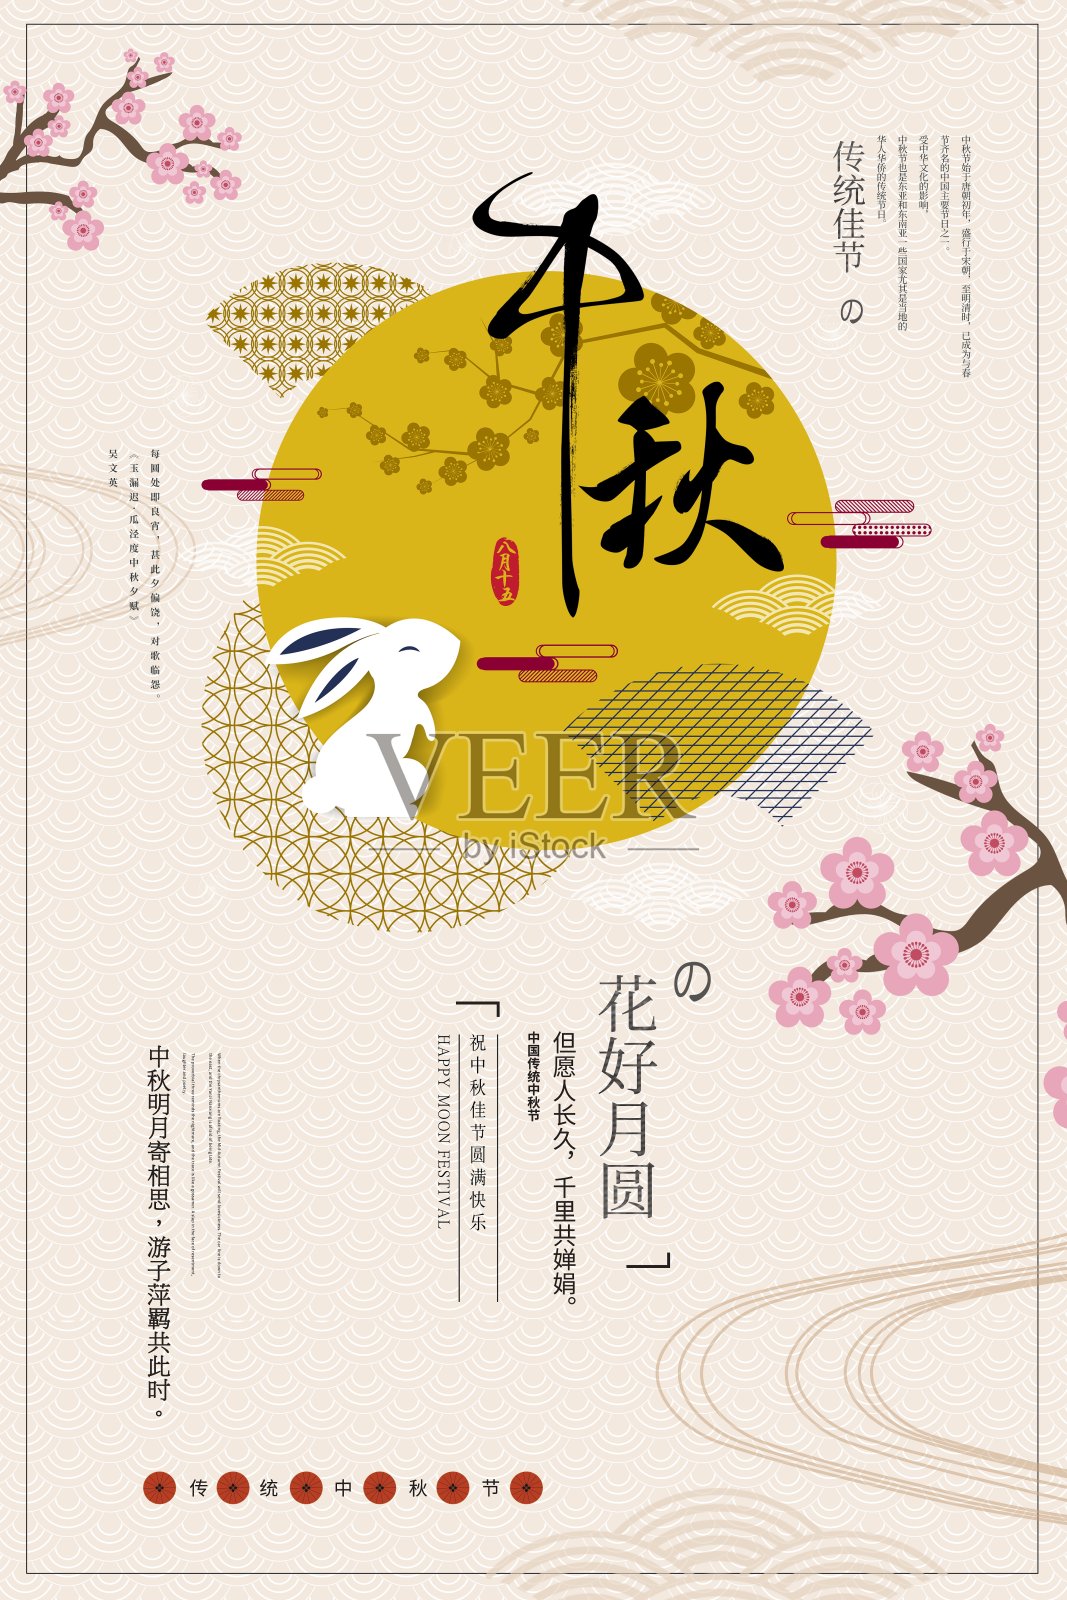 简约中国风中秋节传统节日海报设计模板素材